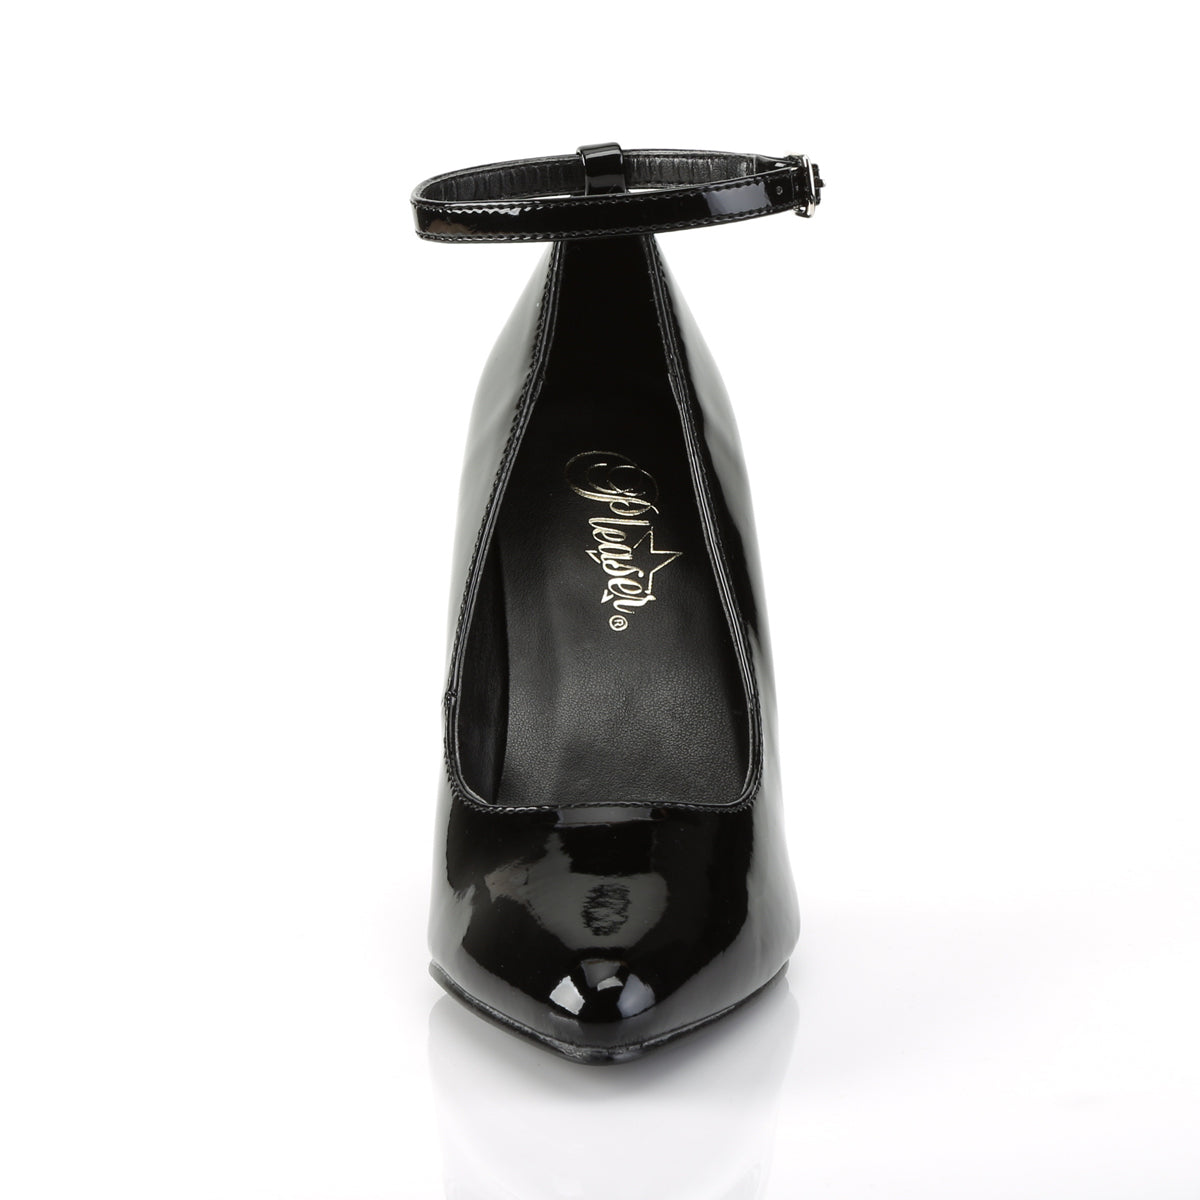 VANITY-431 Pleaser Black Patent Single Sole Shoes [Fetish Shoes]